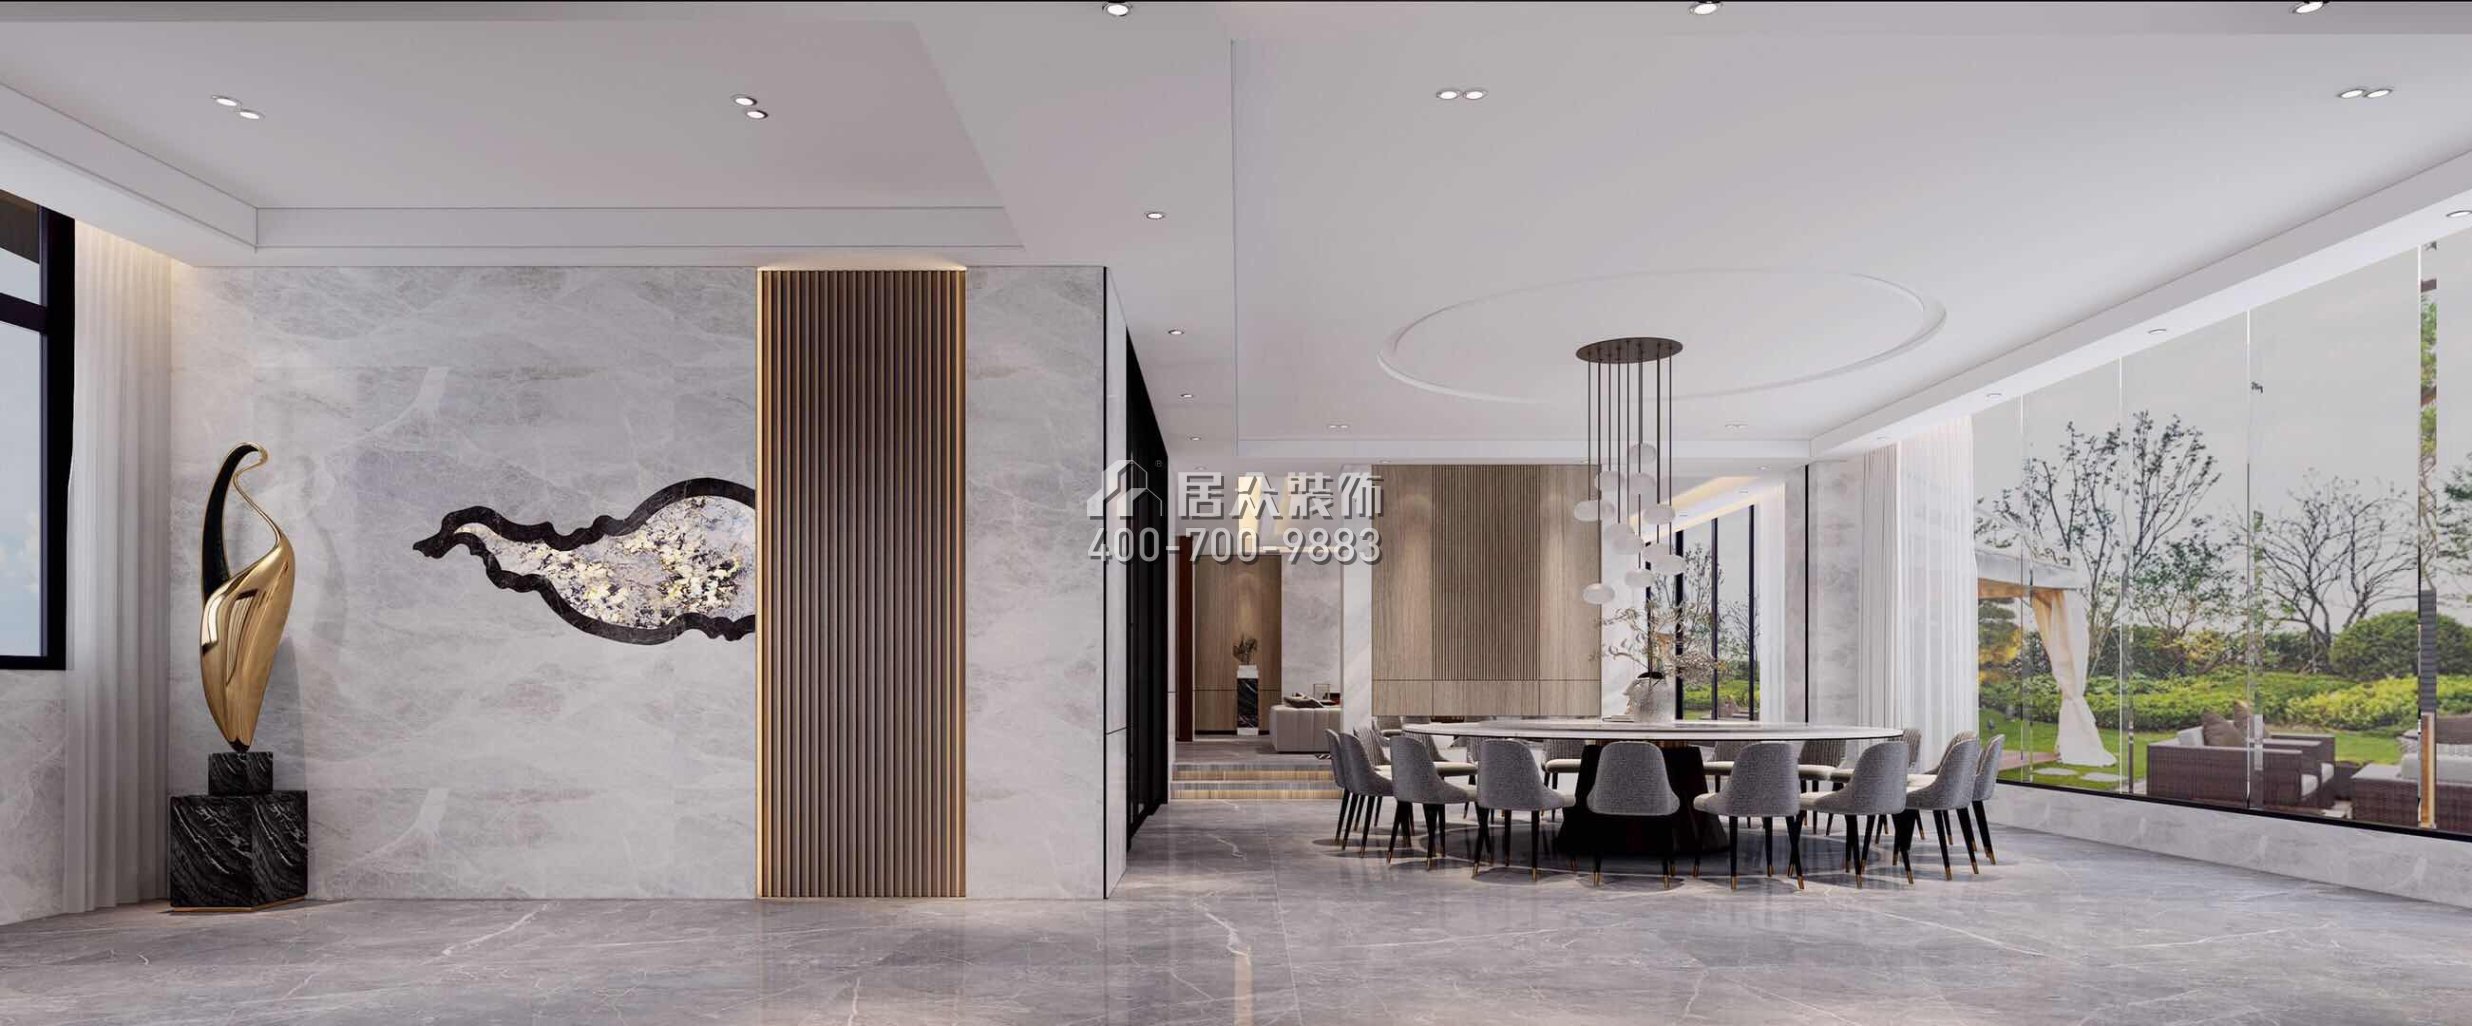 自建房300平方米现代简约风格平层户型餐厅装修效果图